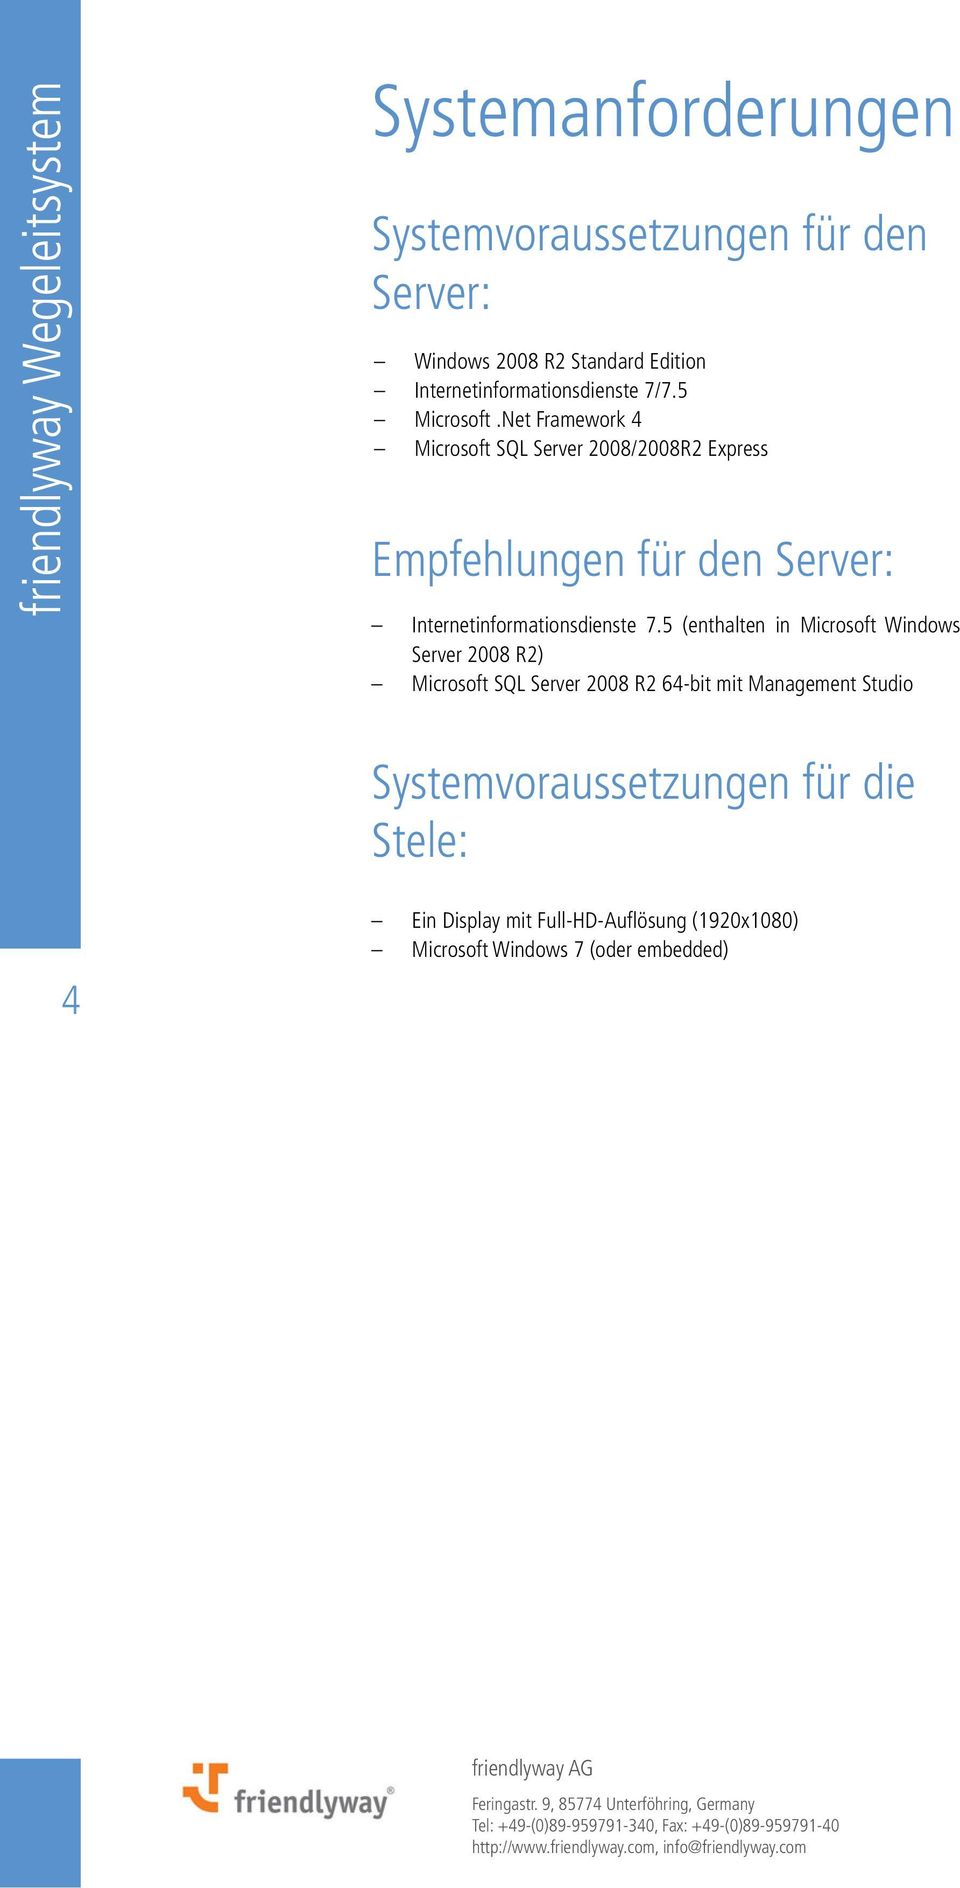 Net Framework 4 Microsoft SQL Server 2008/2008R2 Express Empfehlungen für den Server: Internetinformationsdienste 7.